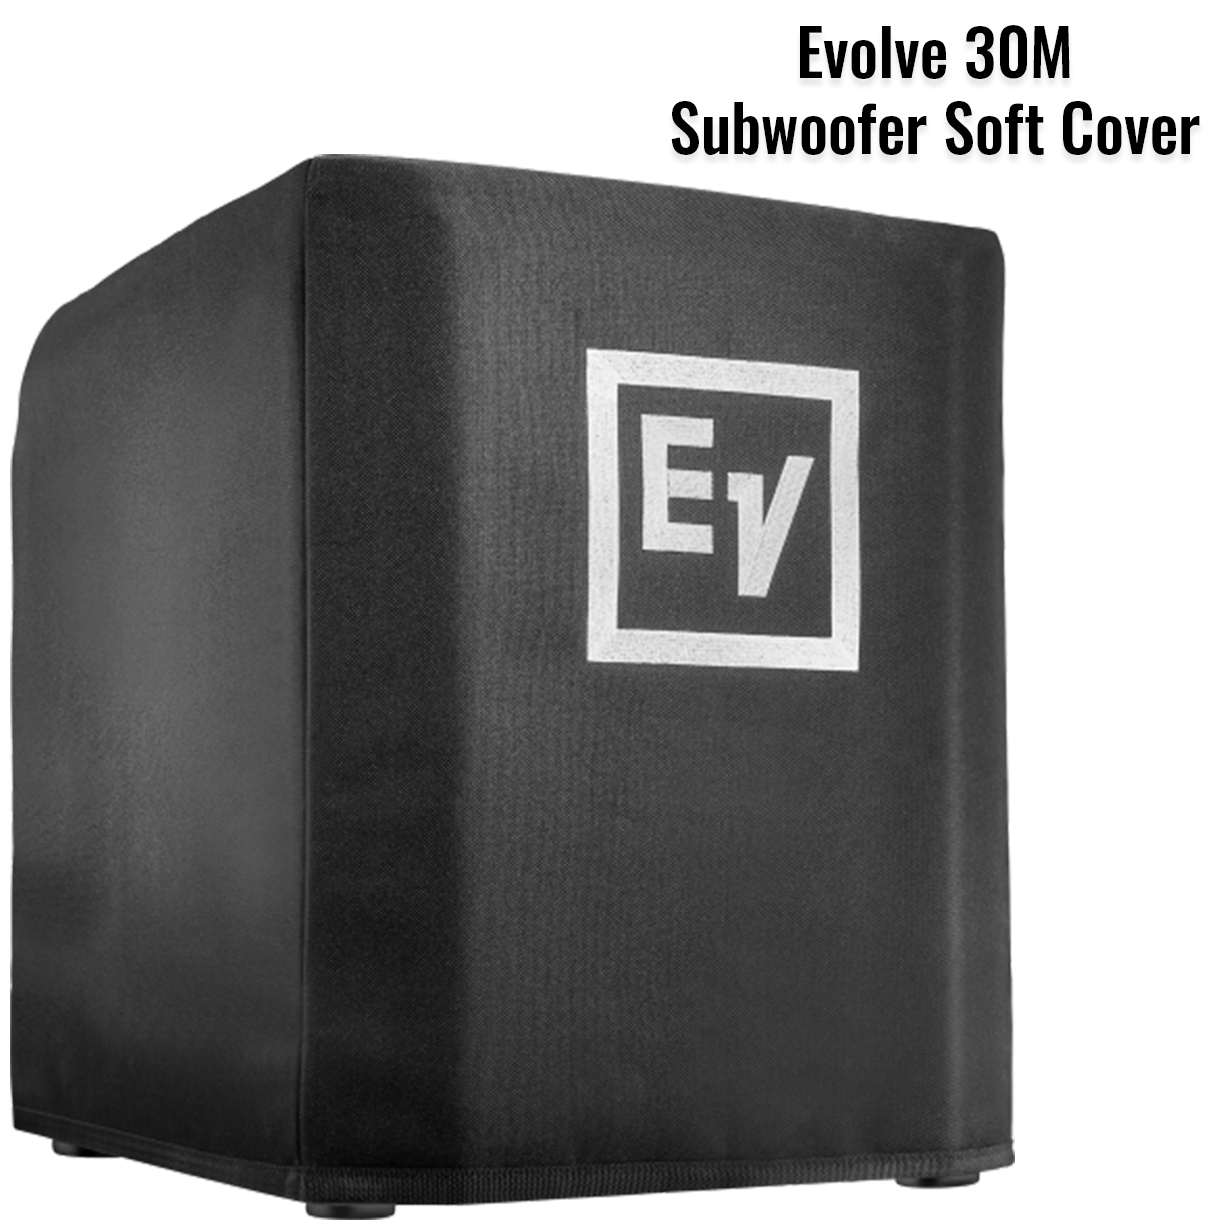 Evolve 30M Subwoofer Soft Cover